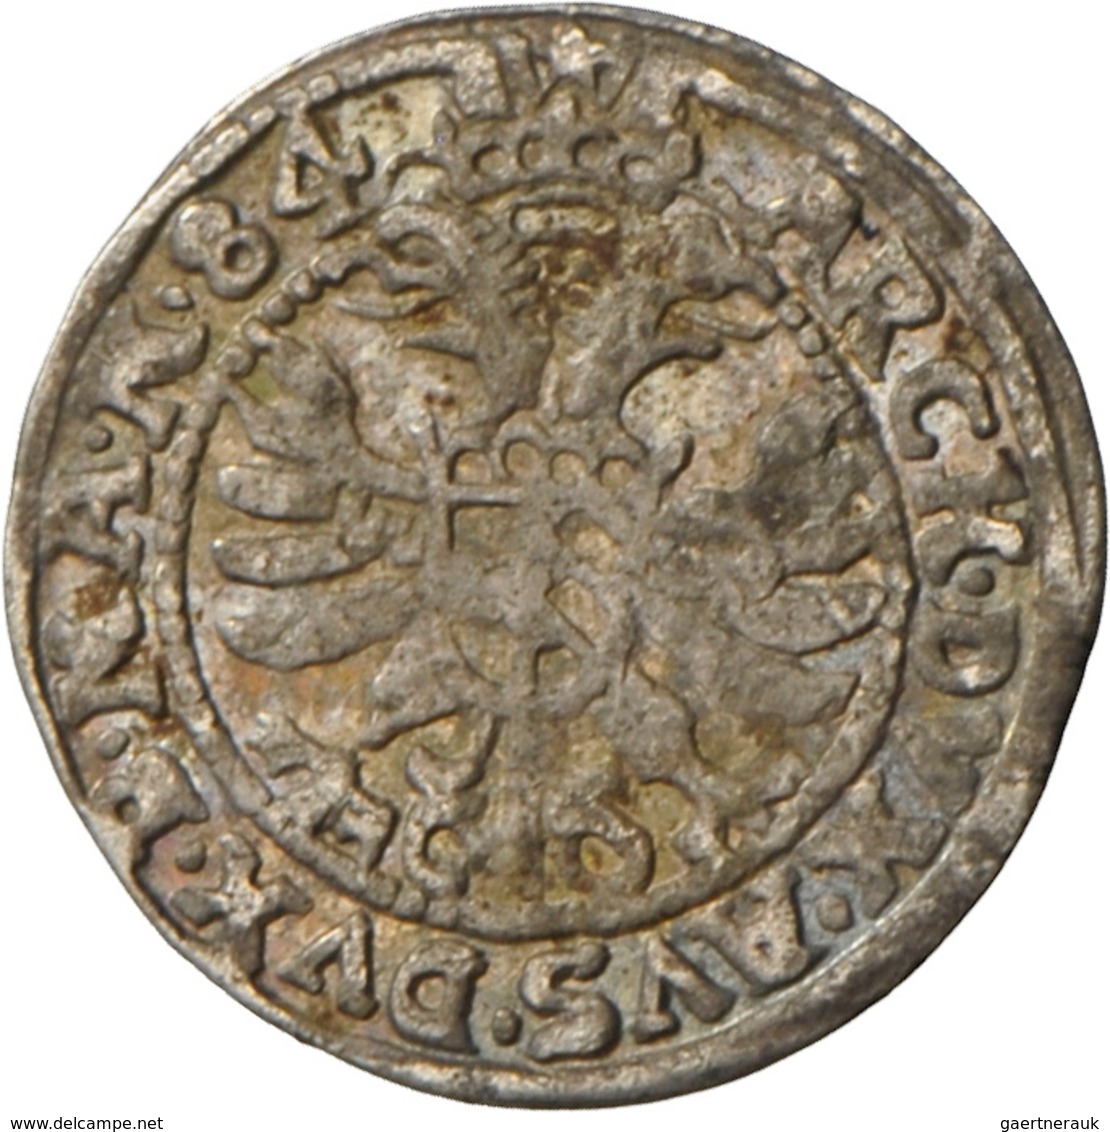 Tschechien: Böhmen, Lot 5 Münzen: Maximilian II: Weißgroschen 1576 (Prag?), Rudolf II: Weißgroschen